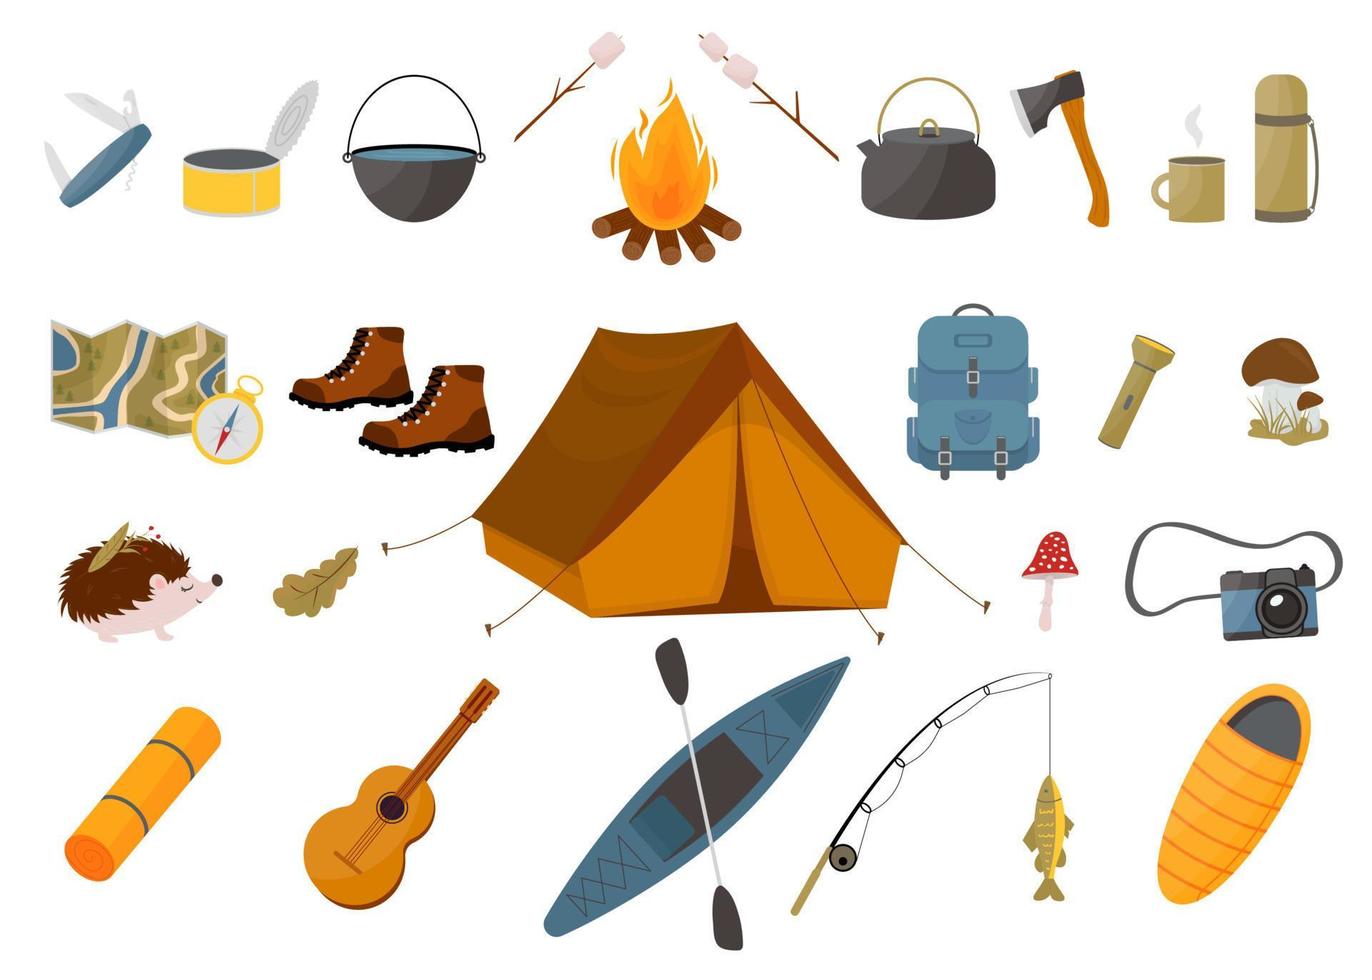 set toeristische uitrusting - tent, rugzak, slaapzak, hengel, kajak en andere items. camping en wandelen collectie. trekking uitrusting. vector